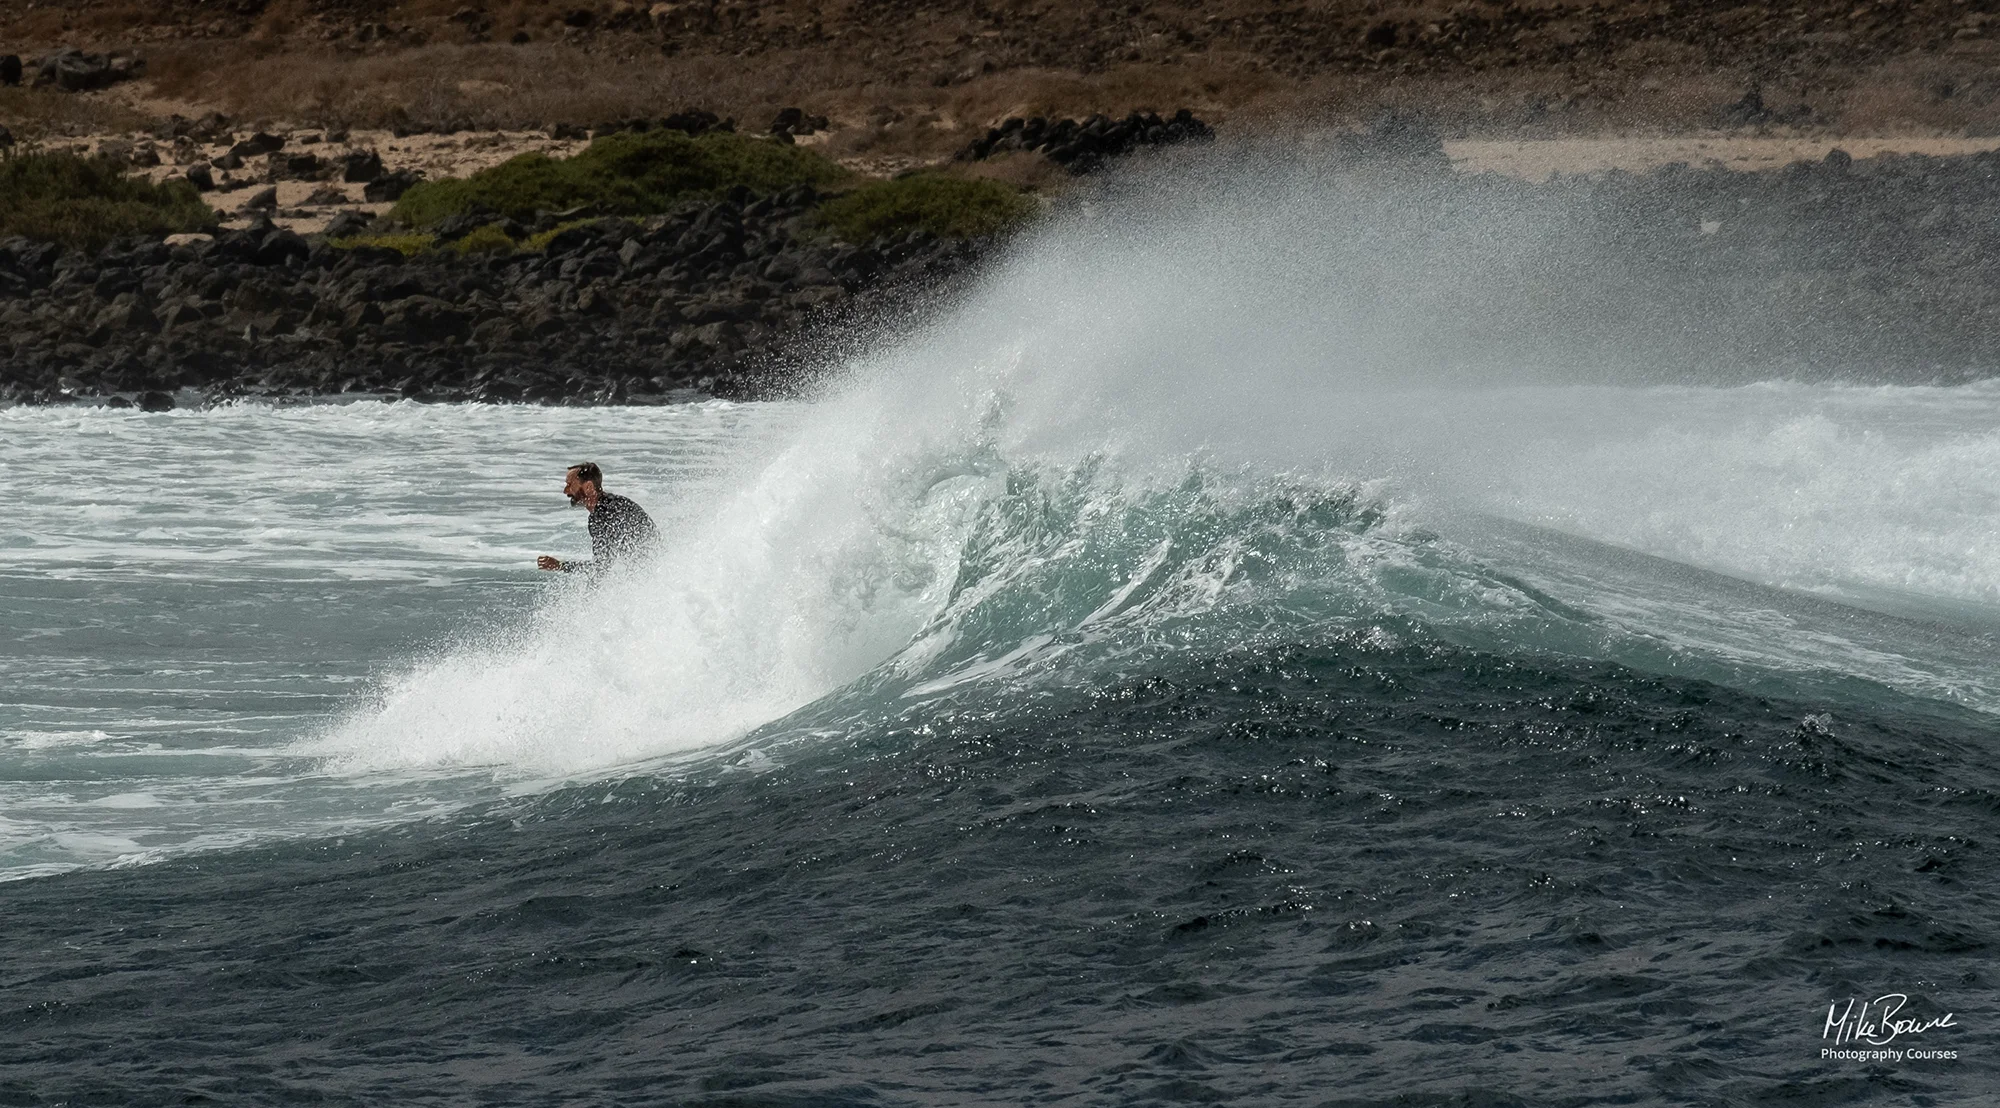 Surfer riding a wave at Playa de La Isleta, Lanzarote